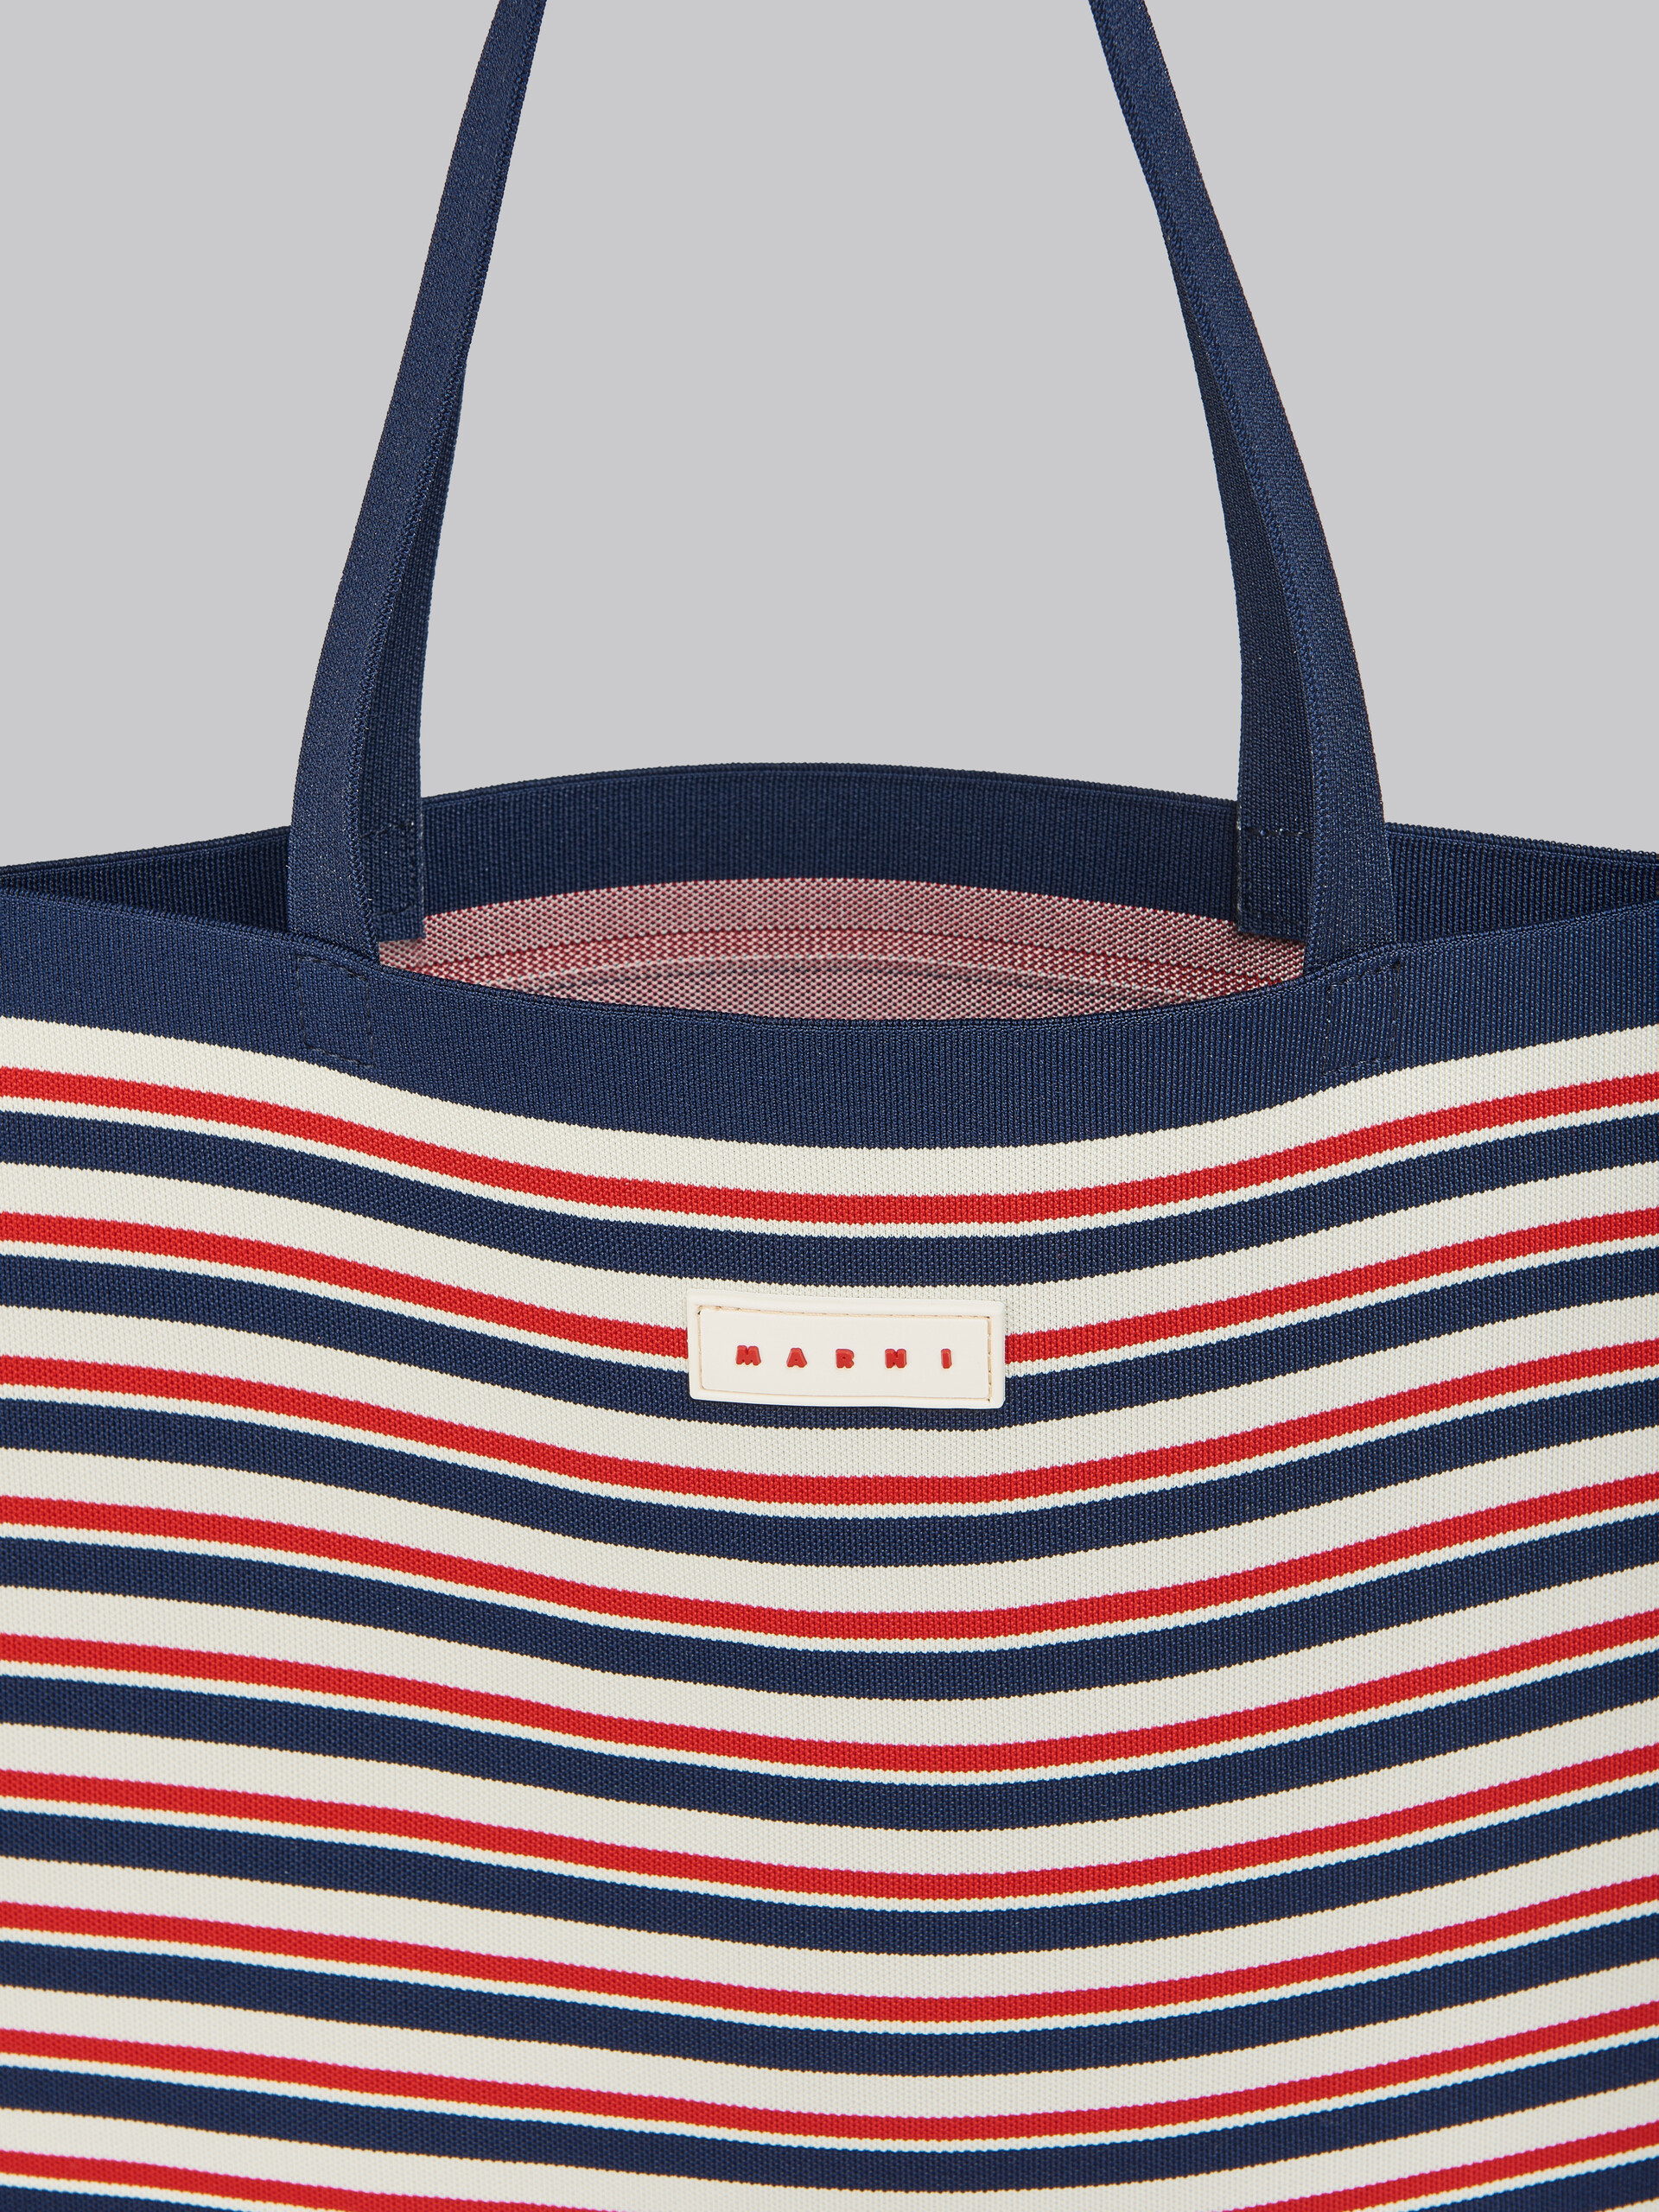 Flache Tote Bag aus Jacquard mit Streifen in Marineblau, Weiß und Rot - Shopper - Image 4